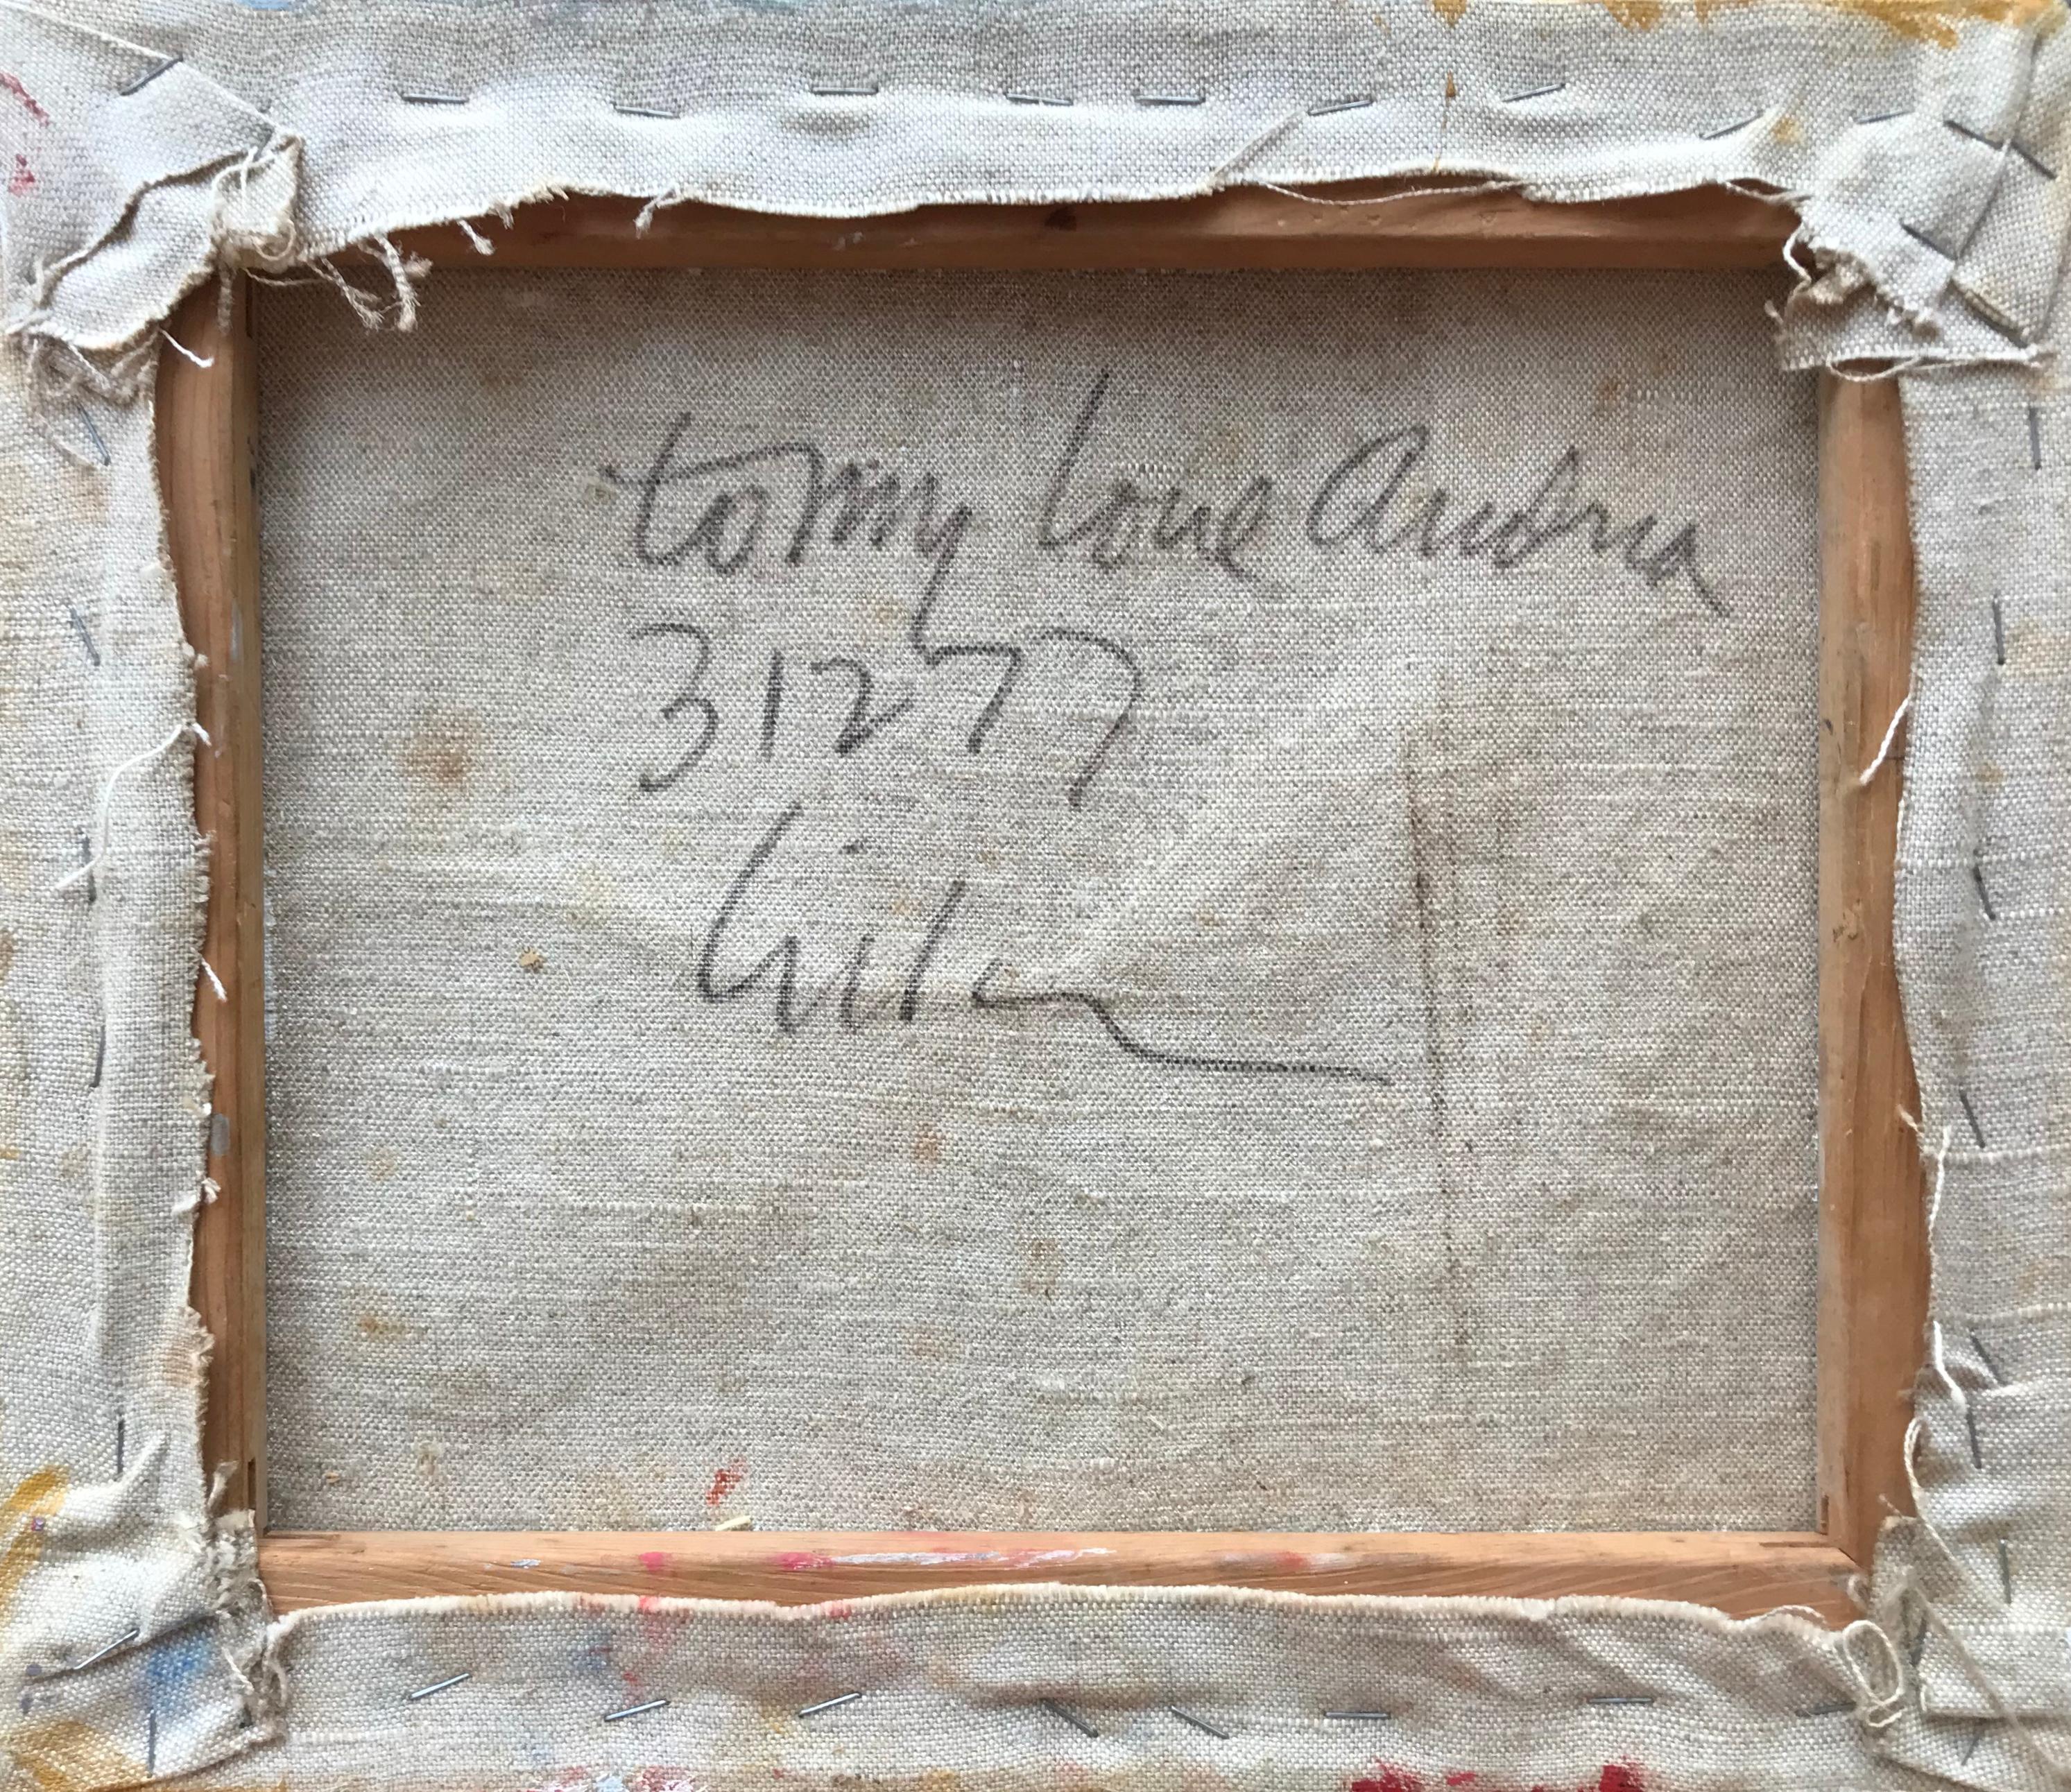 Acryl auf Leinwand Freiform abstraktes Gemälde des amerikanischen Künstlers Harry Hilson. Oben rechts signiert.  Verso signiert und datiert 1977 sowie Andrea gewidmet. Zustand:  Sehr gut.  Alle Seiten des Kunstwerks sind bemalt:: sodass ein Rahmen